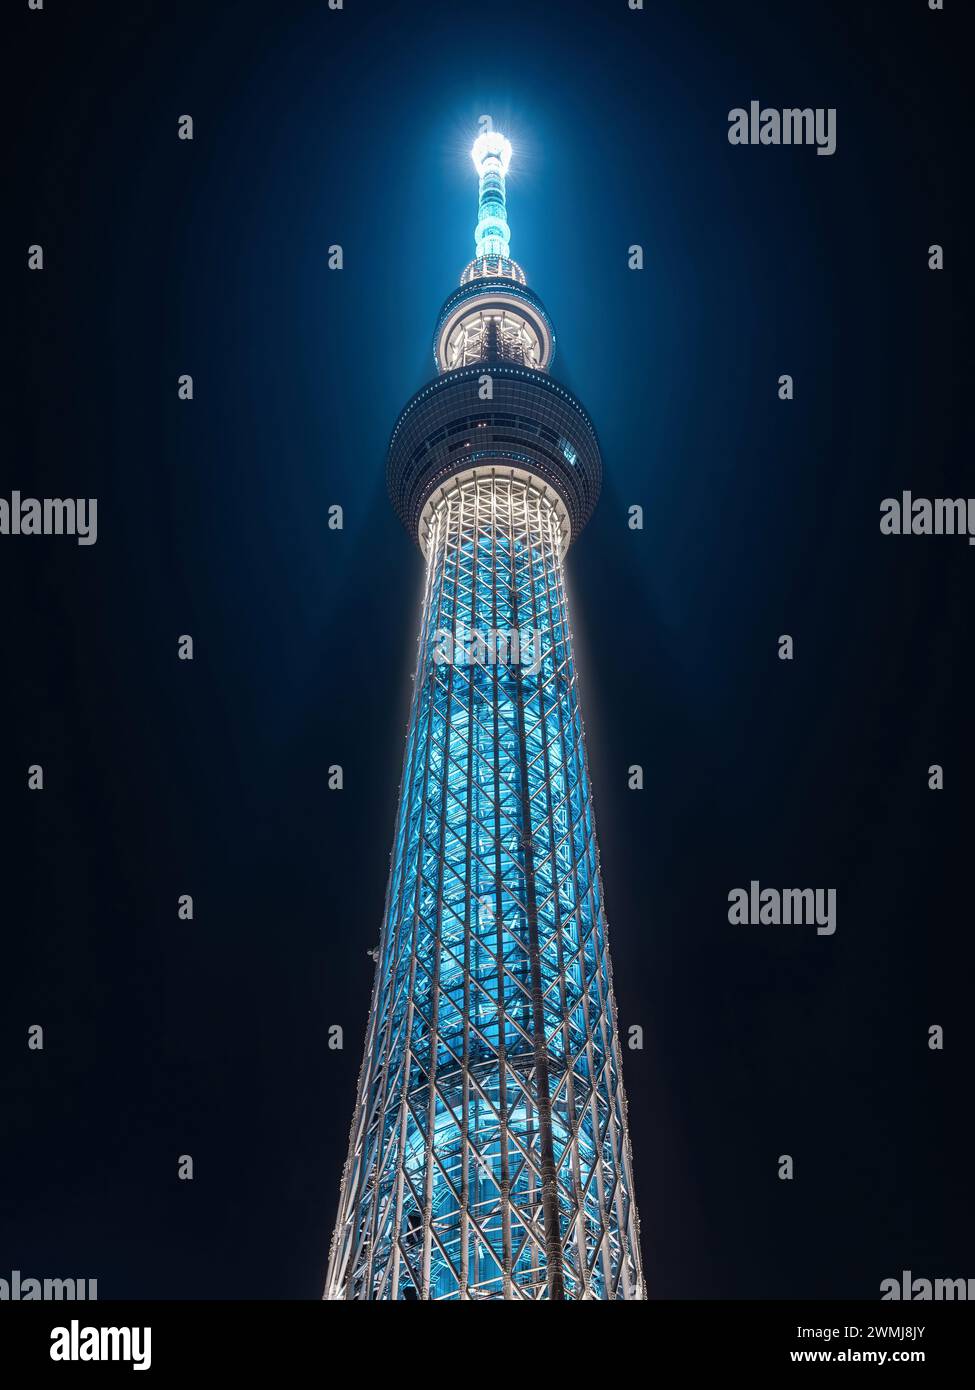 Architektonisches Wahrzeichen Tokio Skytree beleuchtet bei Nacht in Tokio, Japan. Stockfoto